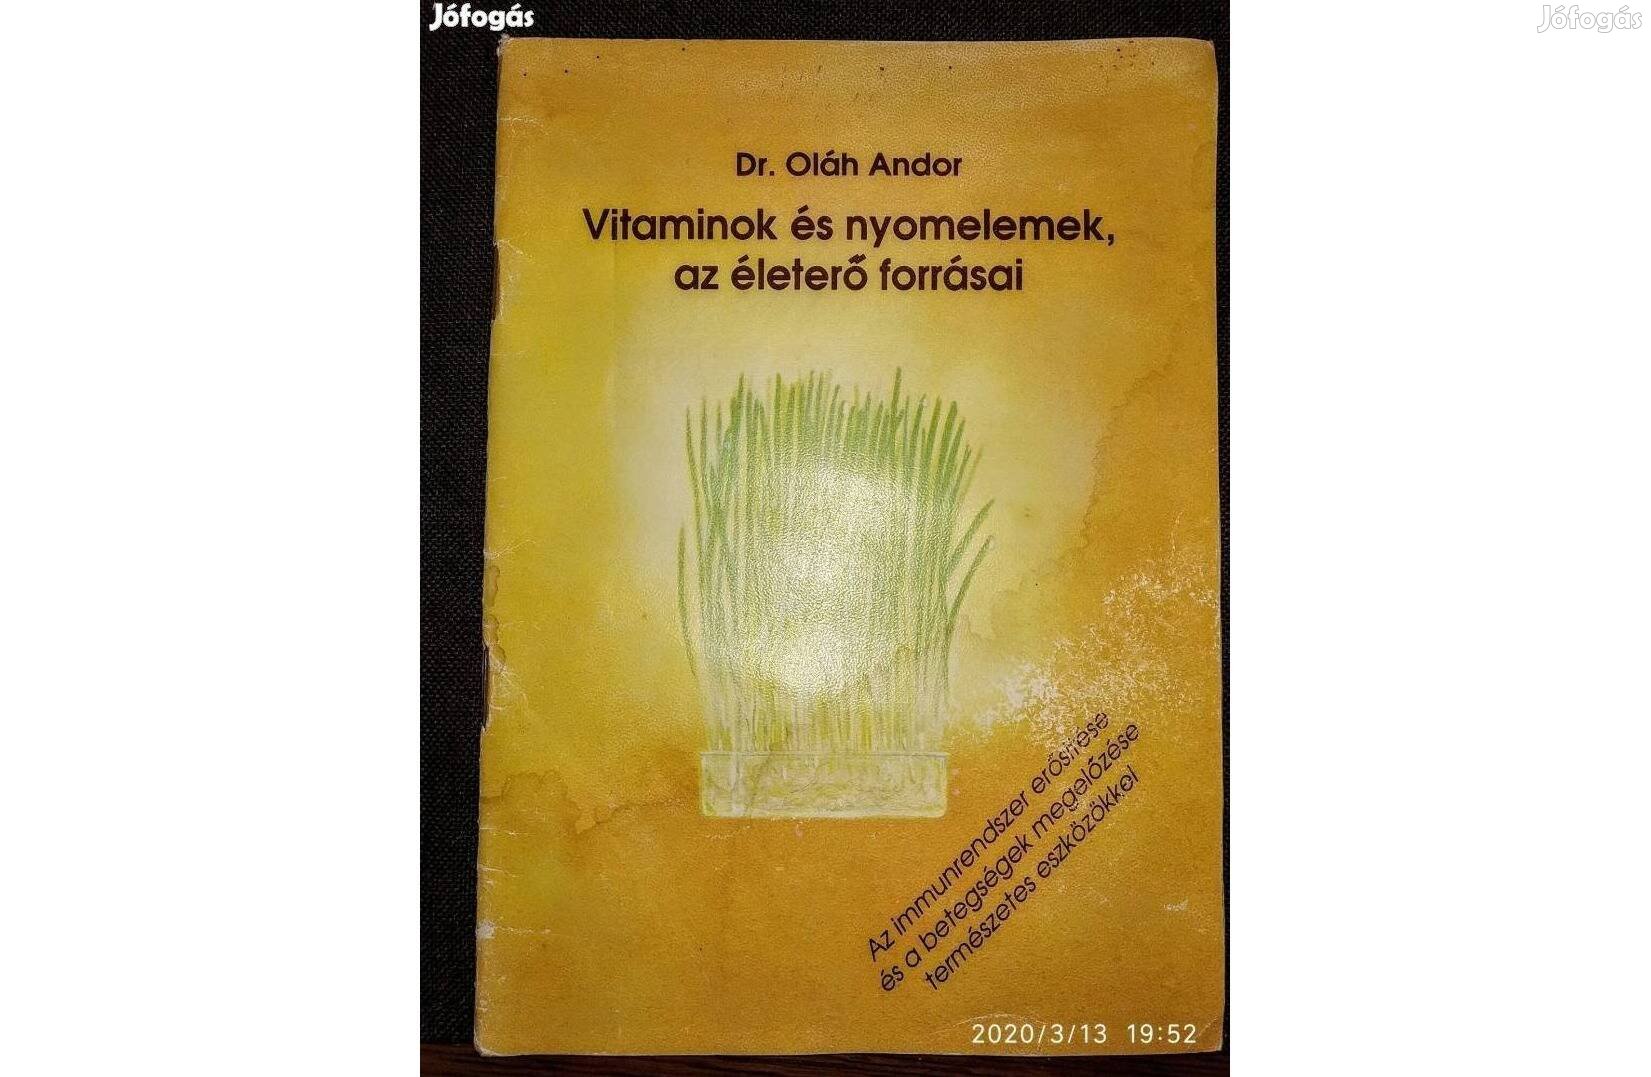 Vitaminok és nyomelemek Dr Oláh Andor